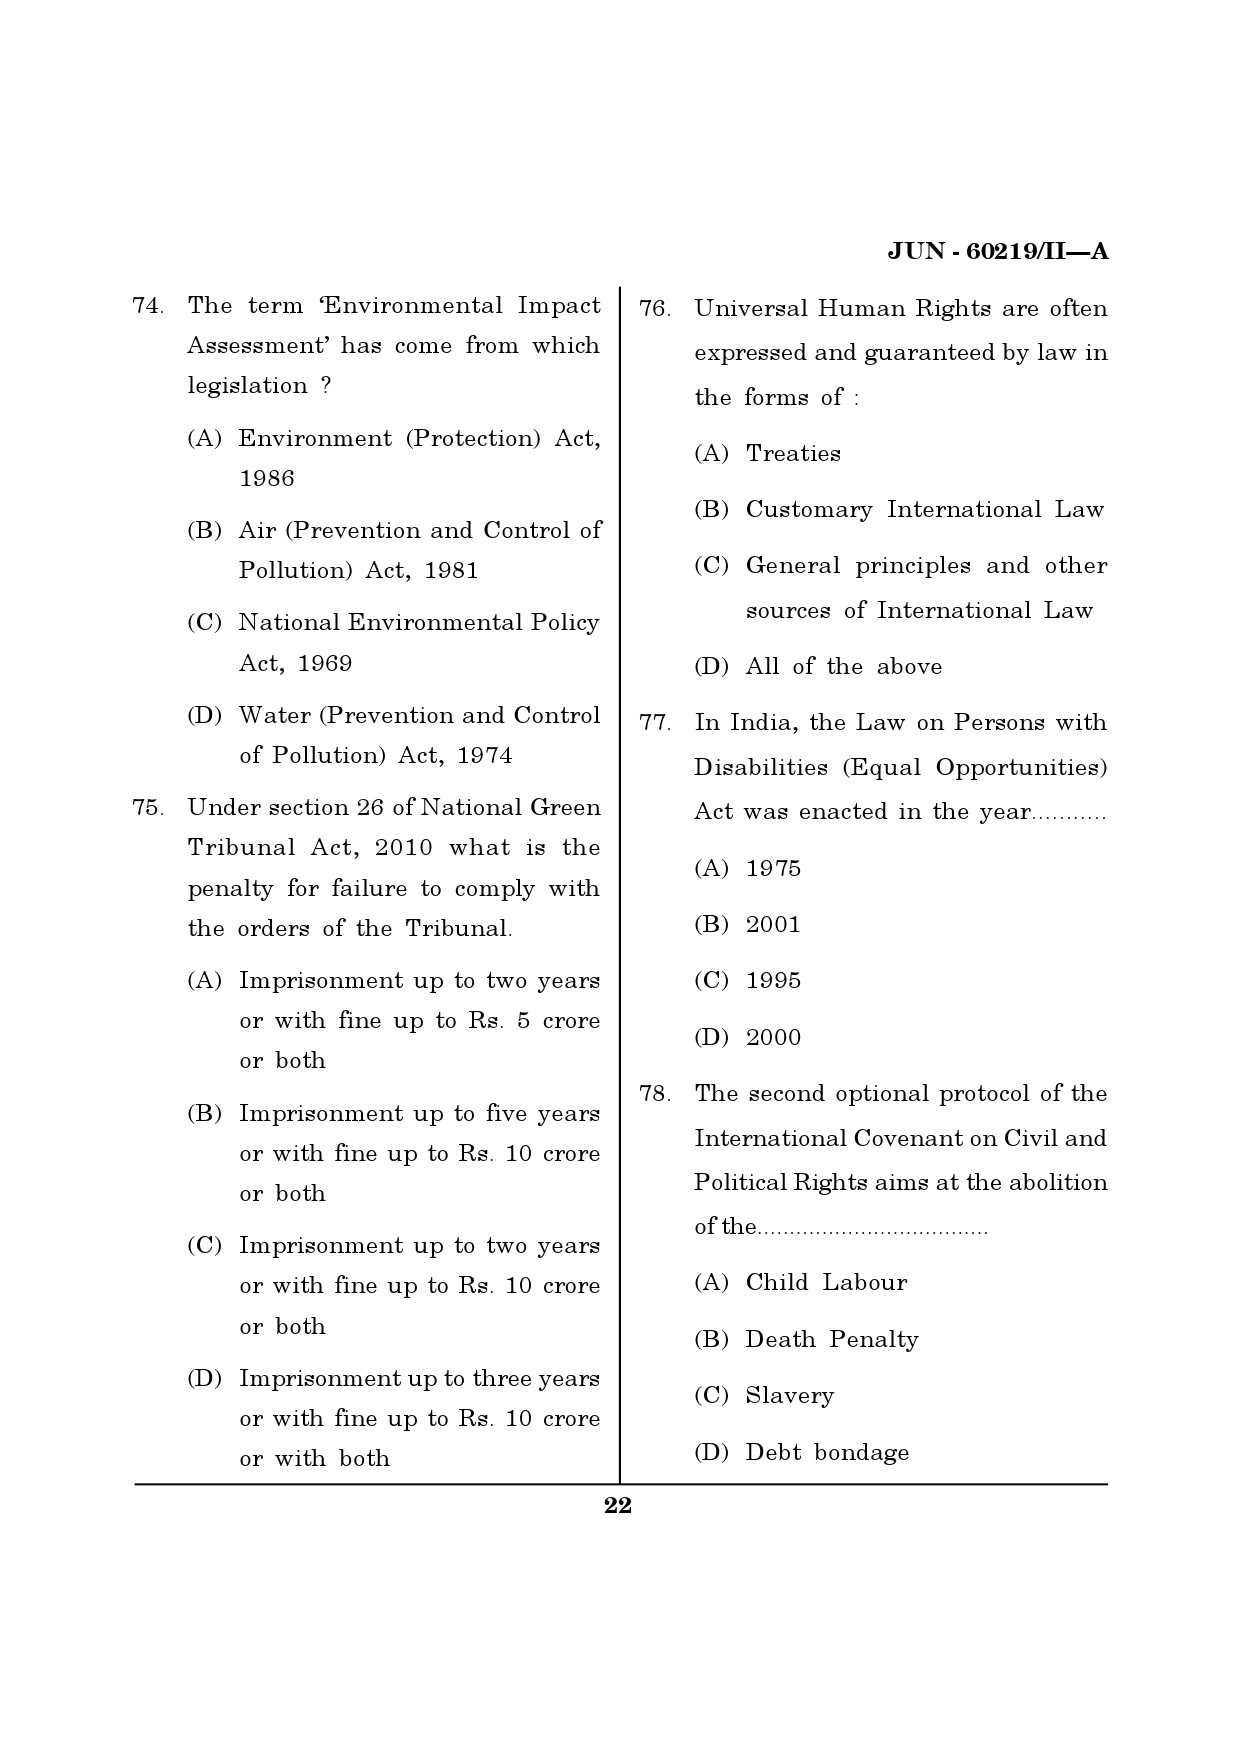 Maharashtra SET Law Question Paper II June 2019 21